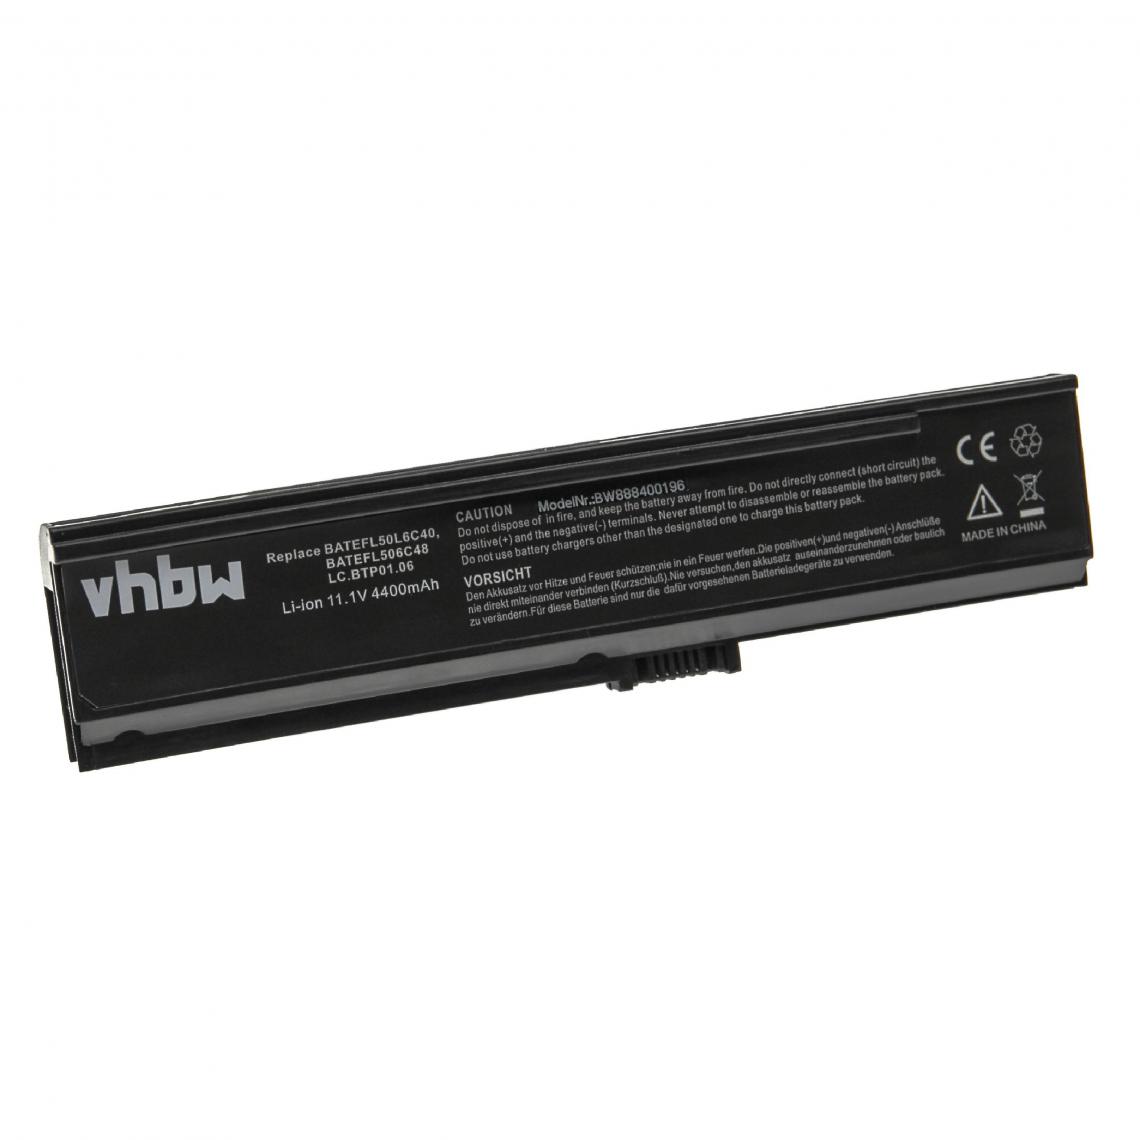 Vhbw - vhbw Batterie remplacement pour Acer BT.00604.012, BT.00903.007, CGR-B/6H5, LC.BPT00.001 pour ordinateur portable Notebook (4 400mAh, 11,1V, Li-ion) - Batterie PC Portable